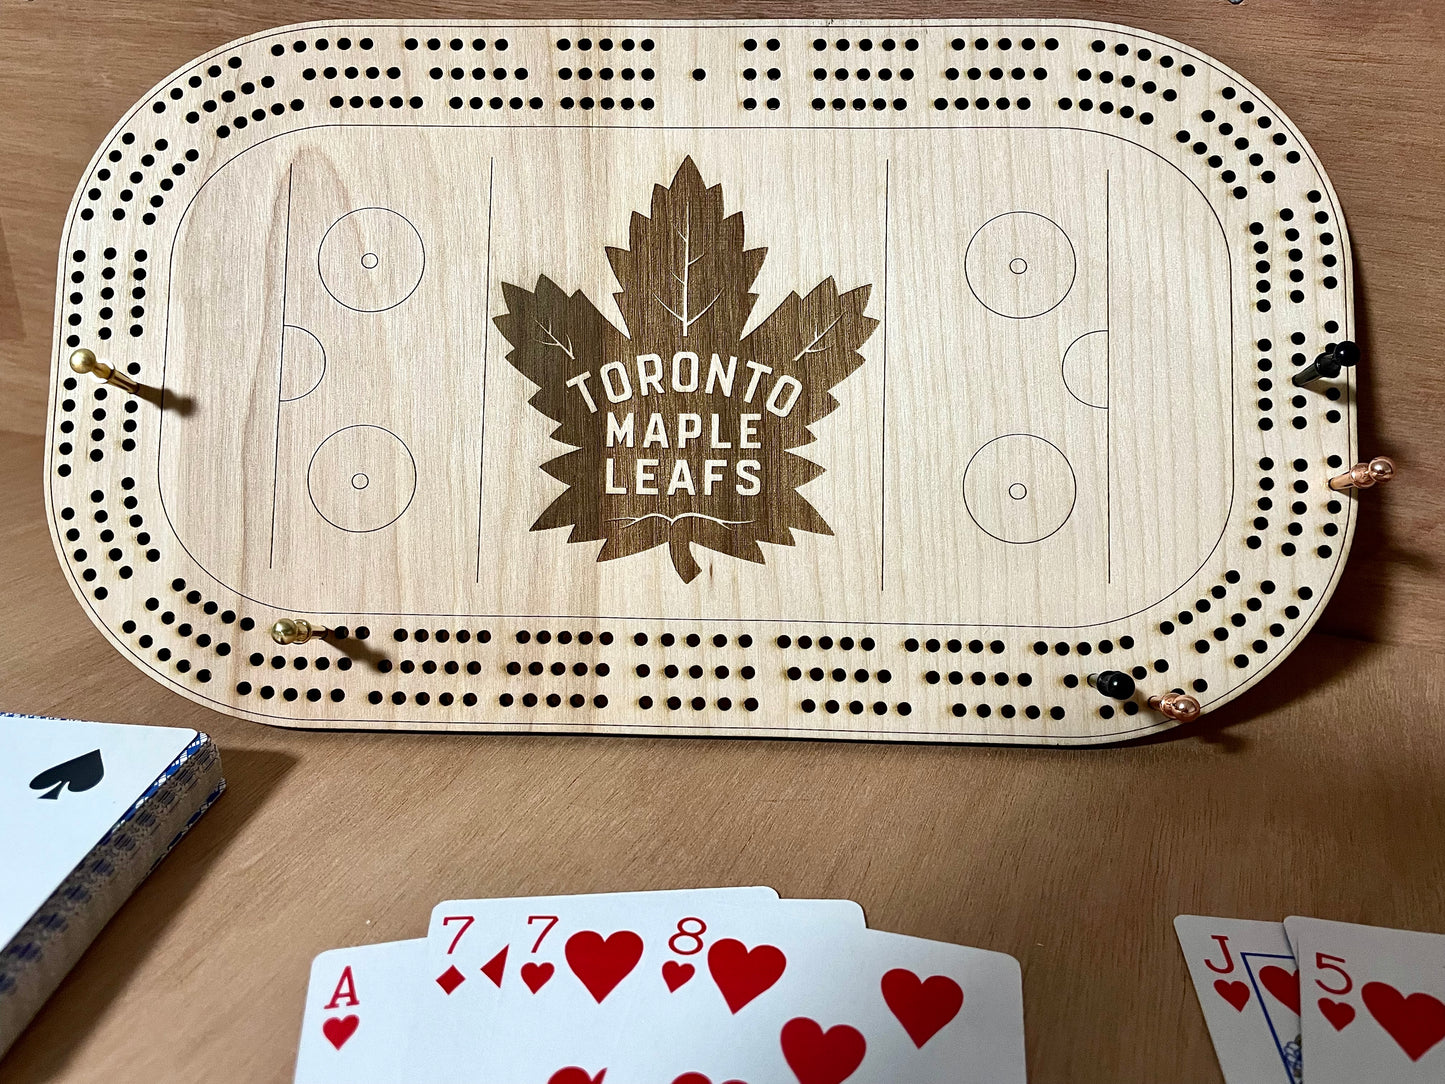 Tabla de cribbage de los Toronto Maple Leafs